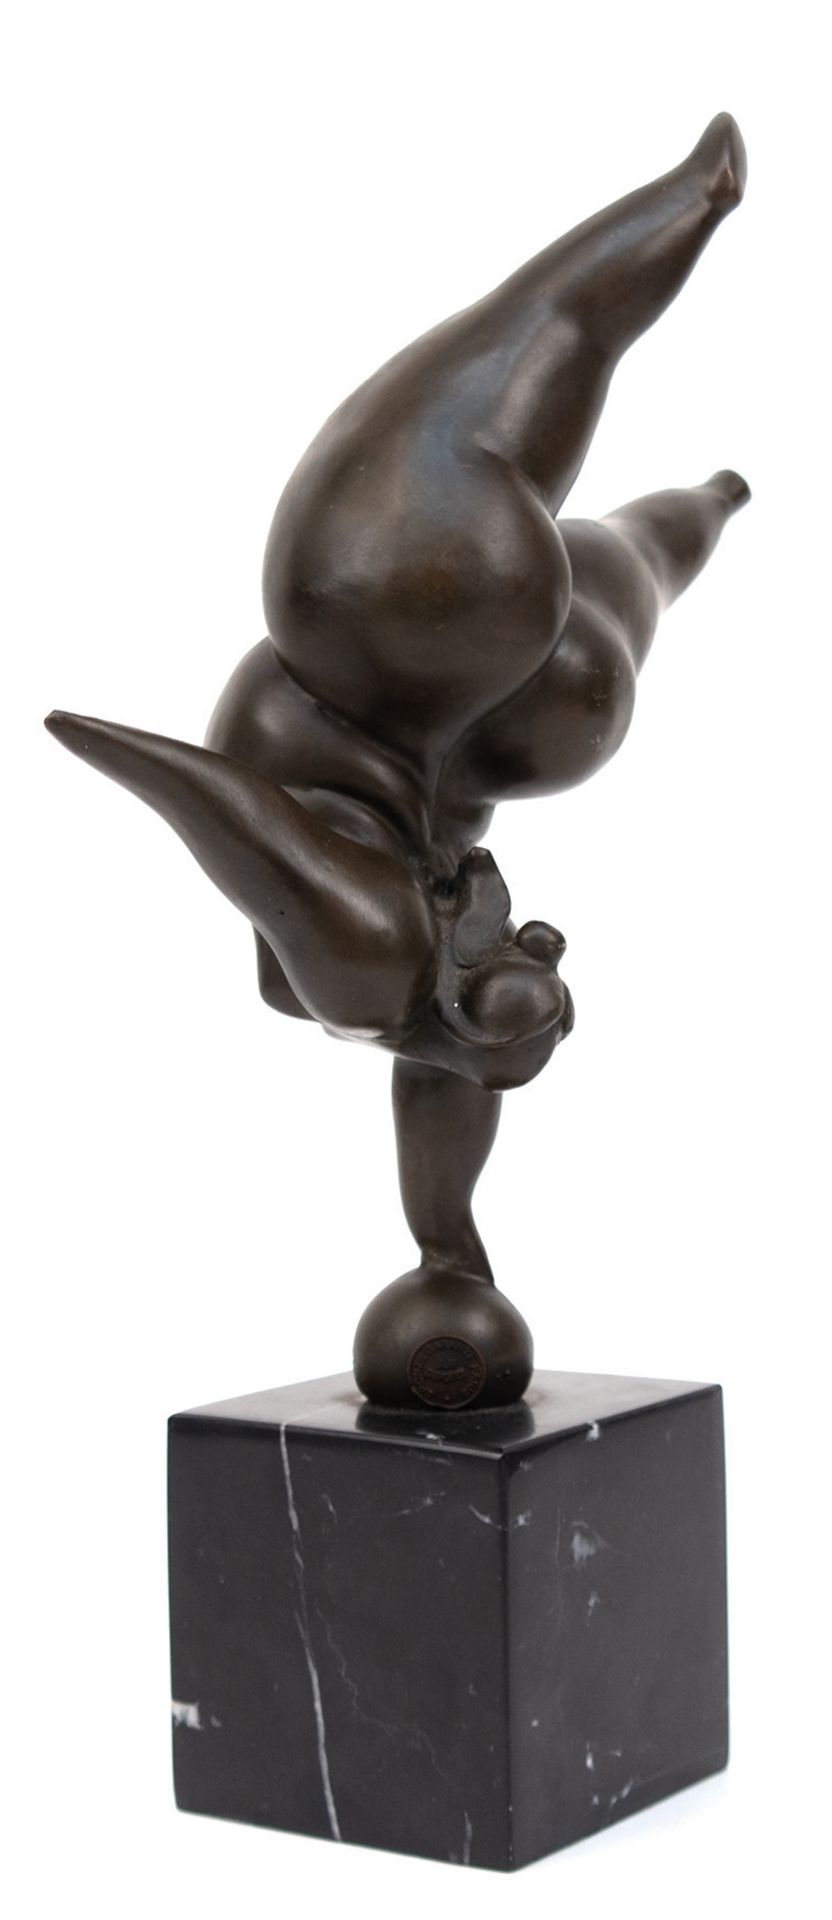 Bronze-Figur "Molliger weiblicher Akt auf einer Kugel balancierend", braun patiniert, bezeichnet "M